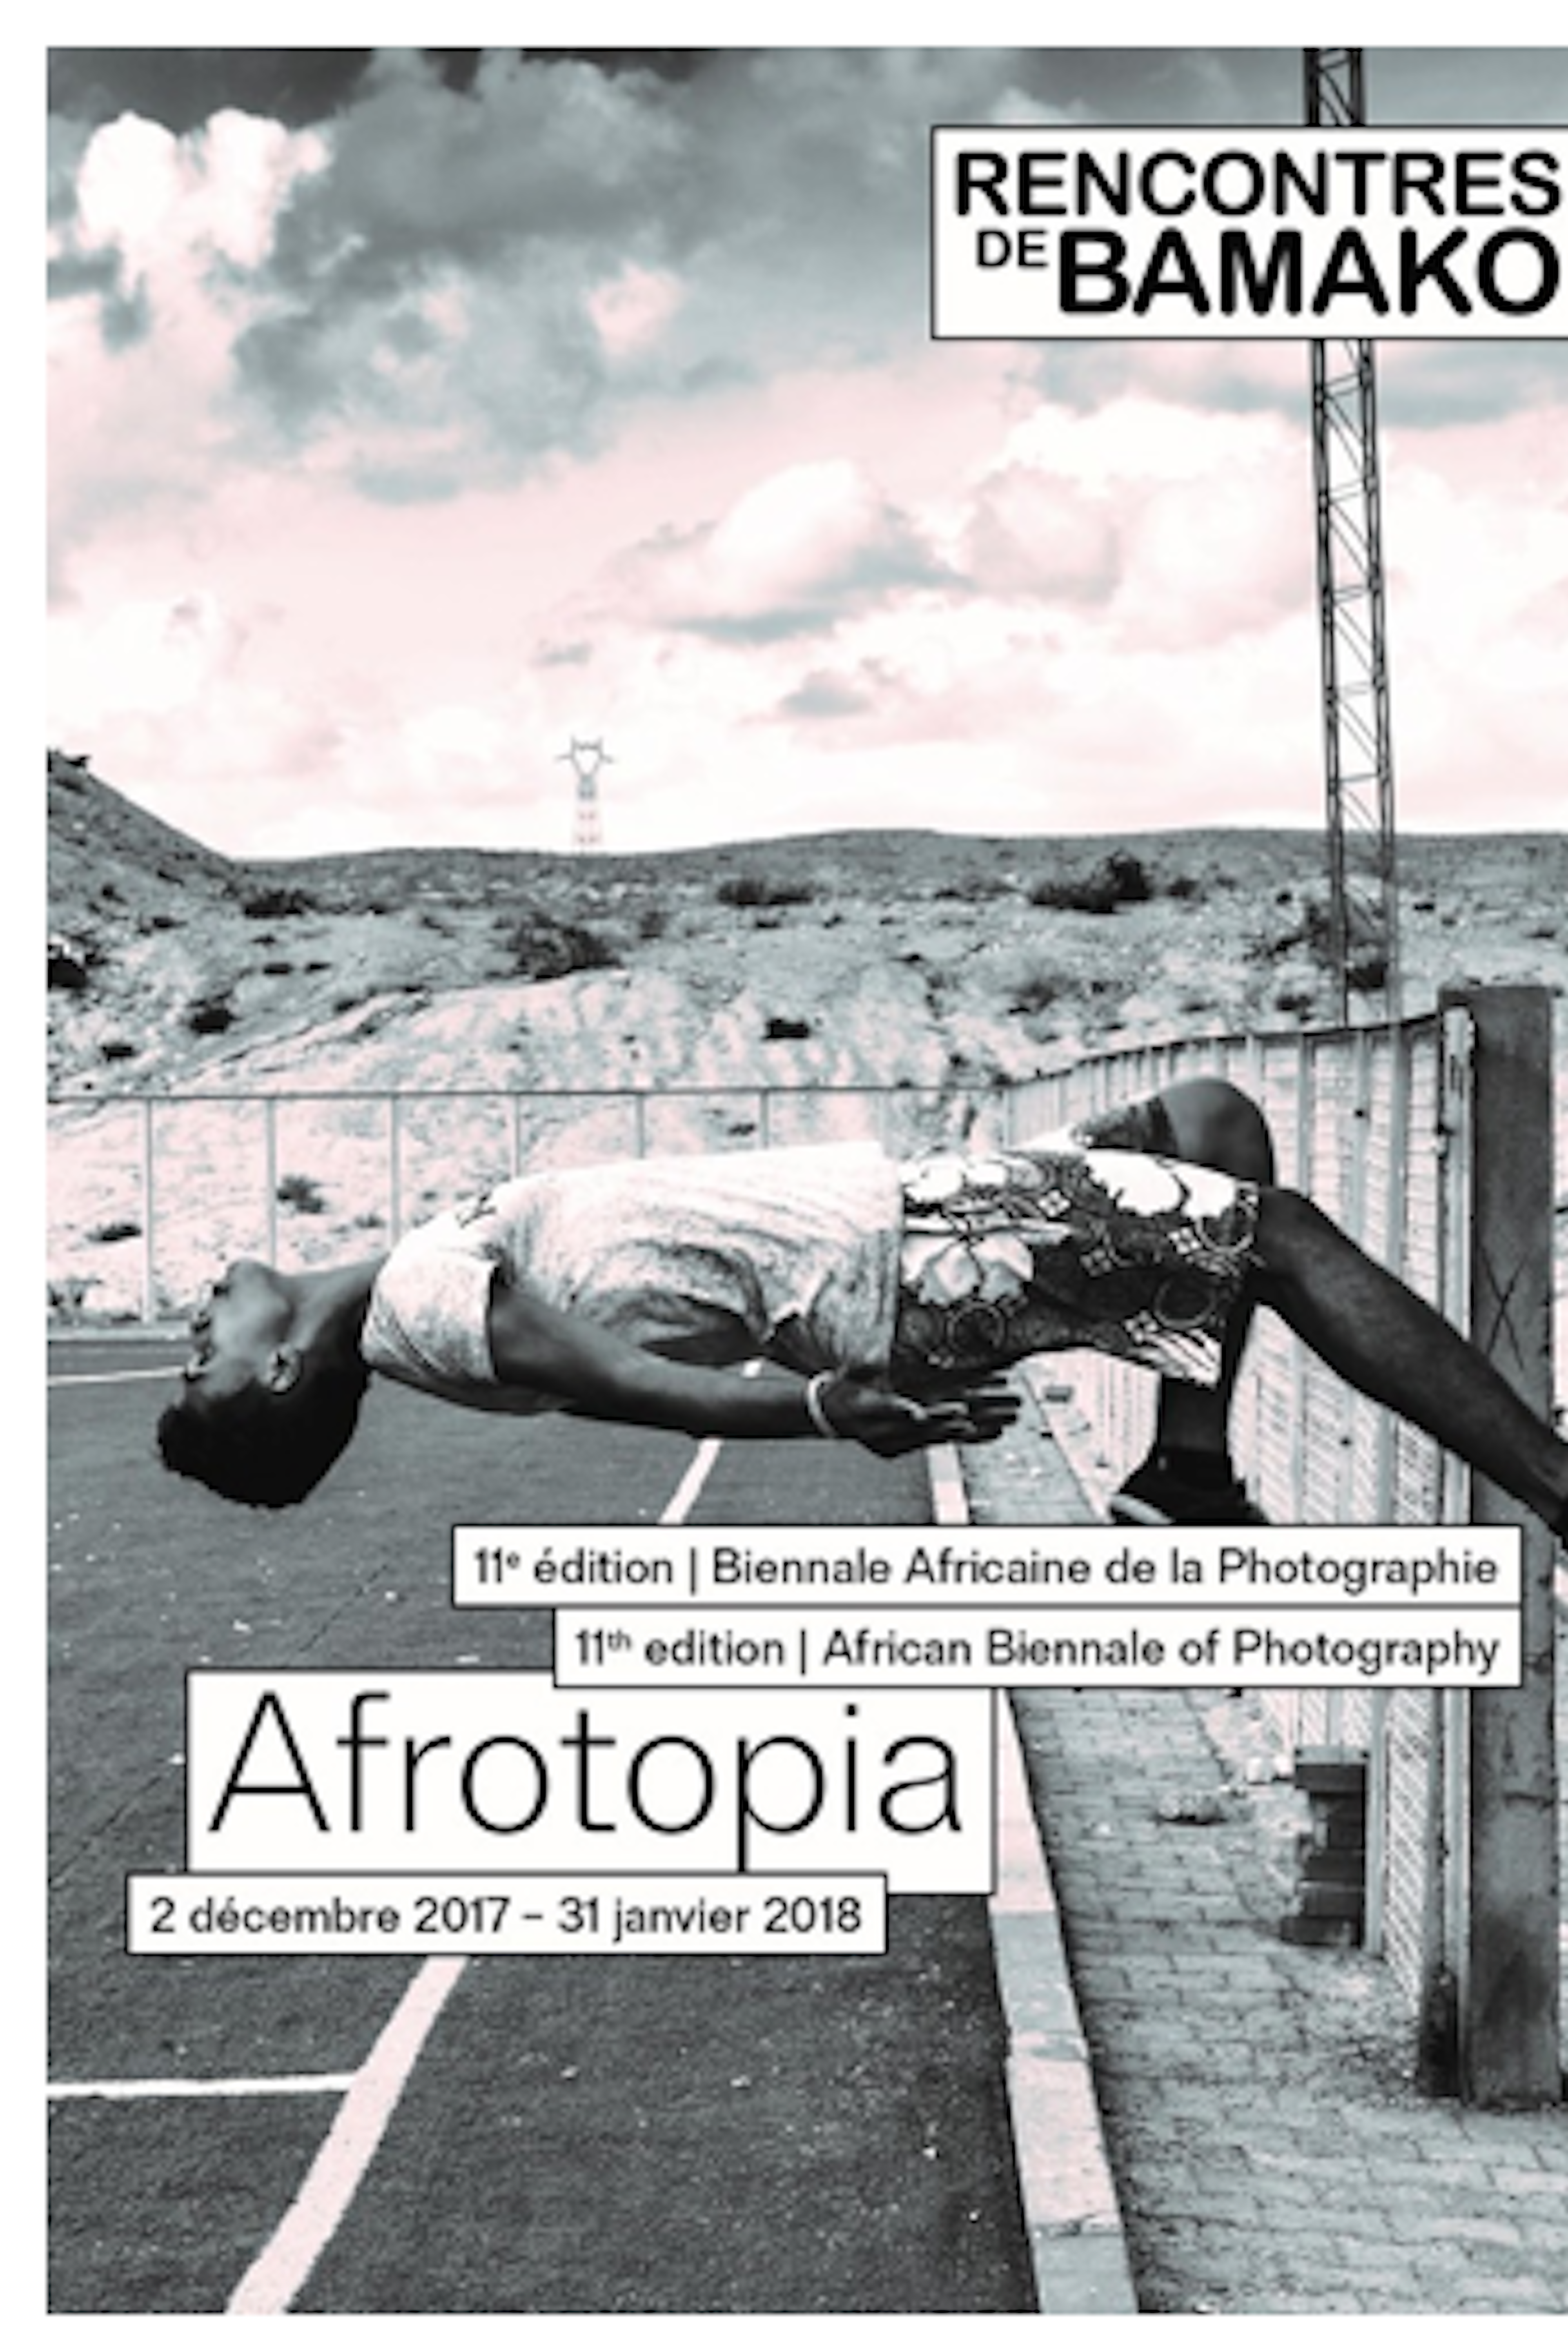 RENCONTRES DE BAMAKO: Afrotopia Exhibition